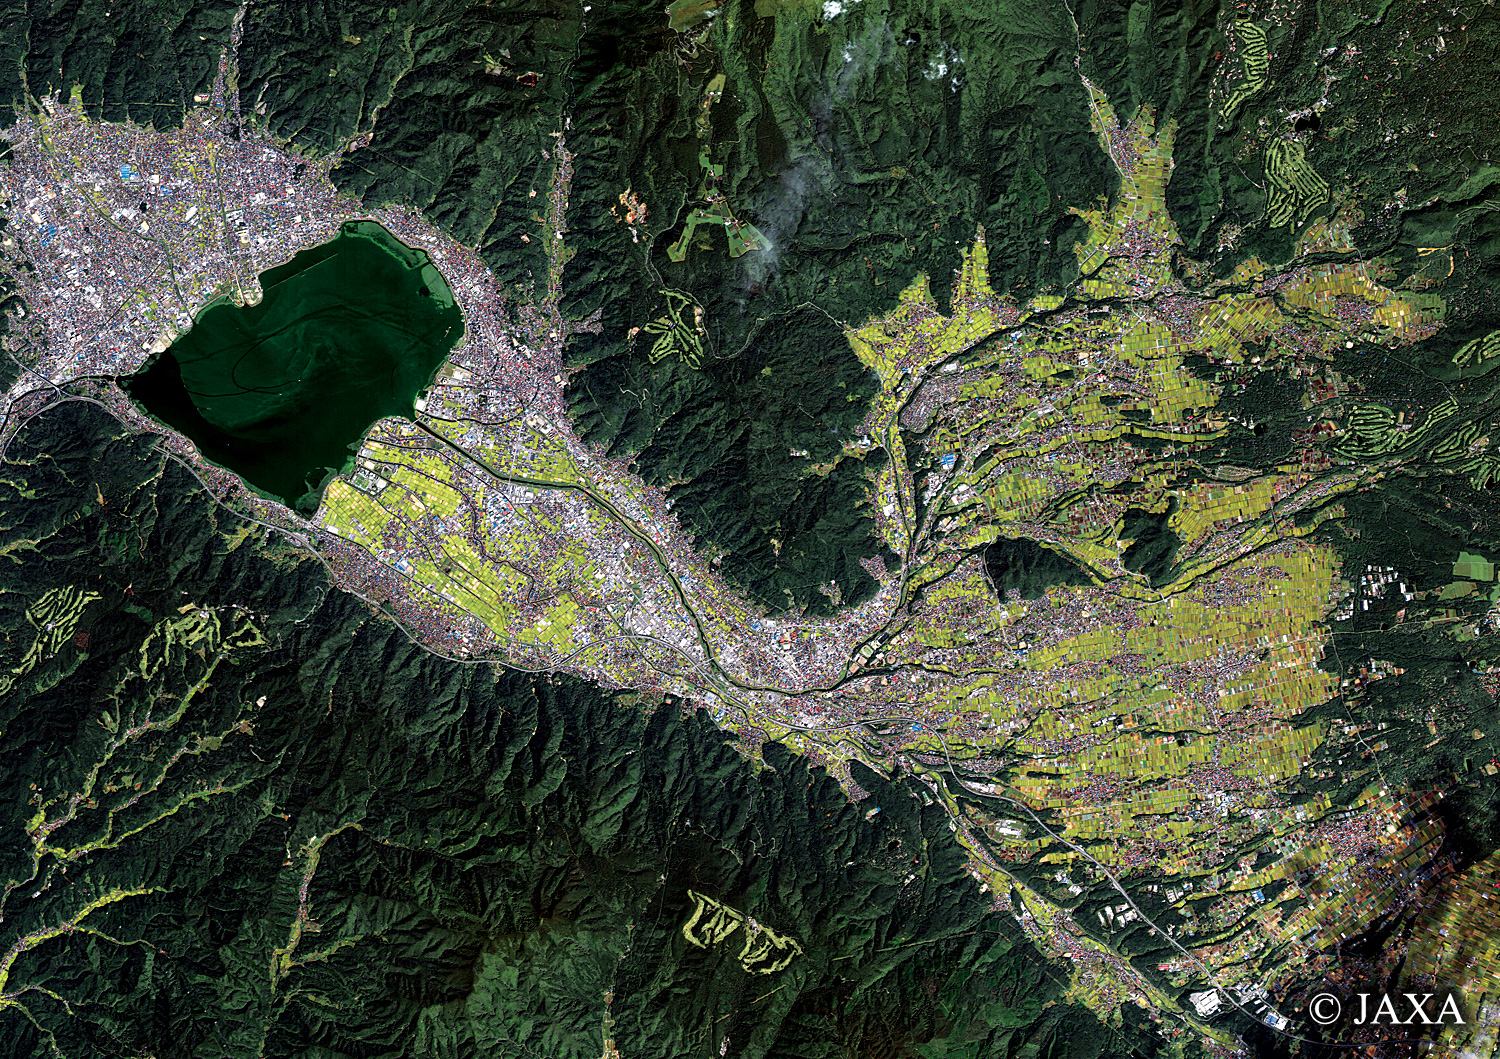 だいちから見た日本の都市 諏訪市、茅野市周辺:衛星画像